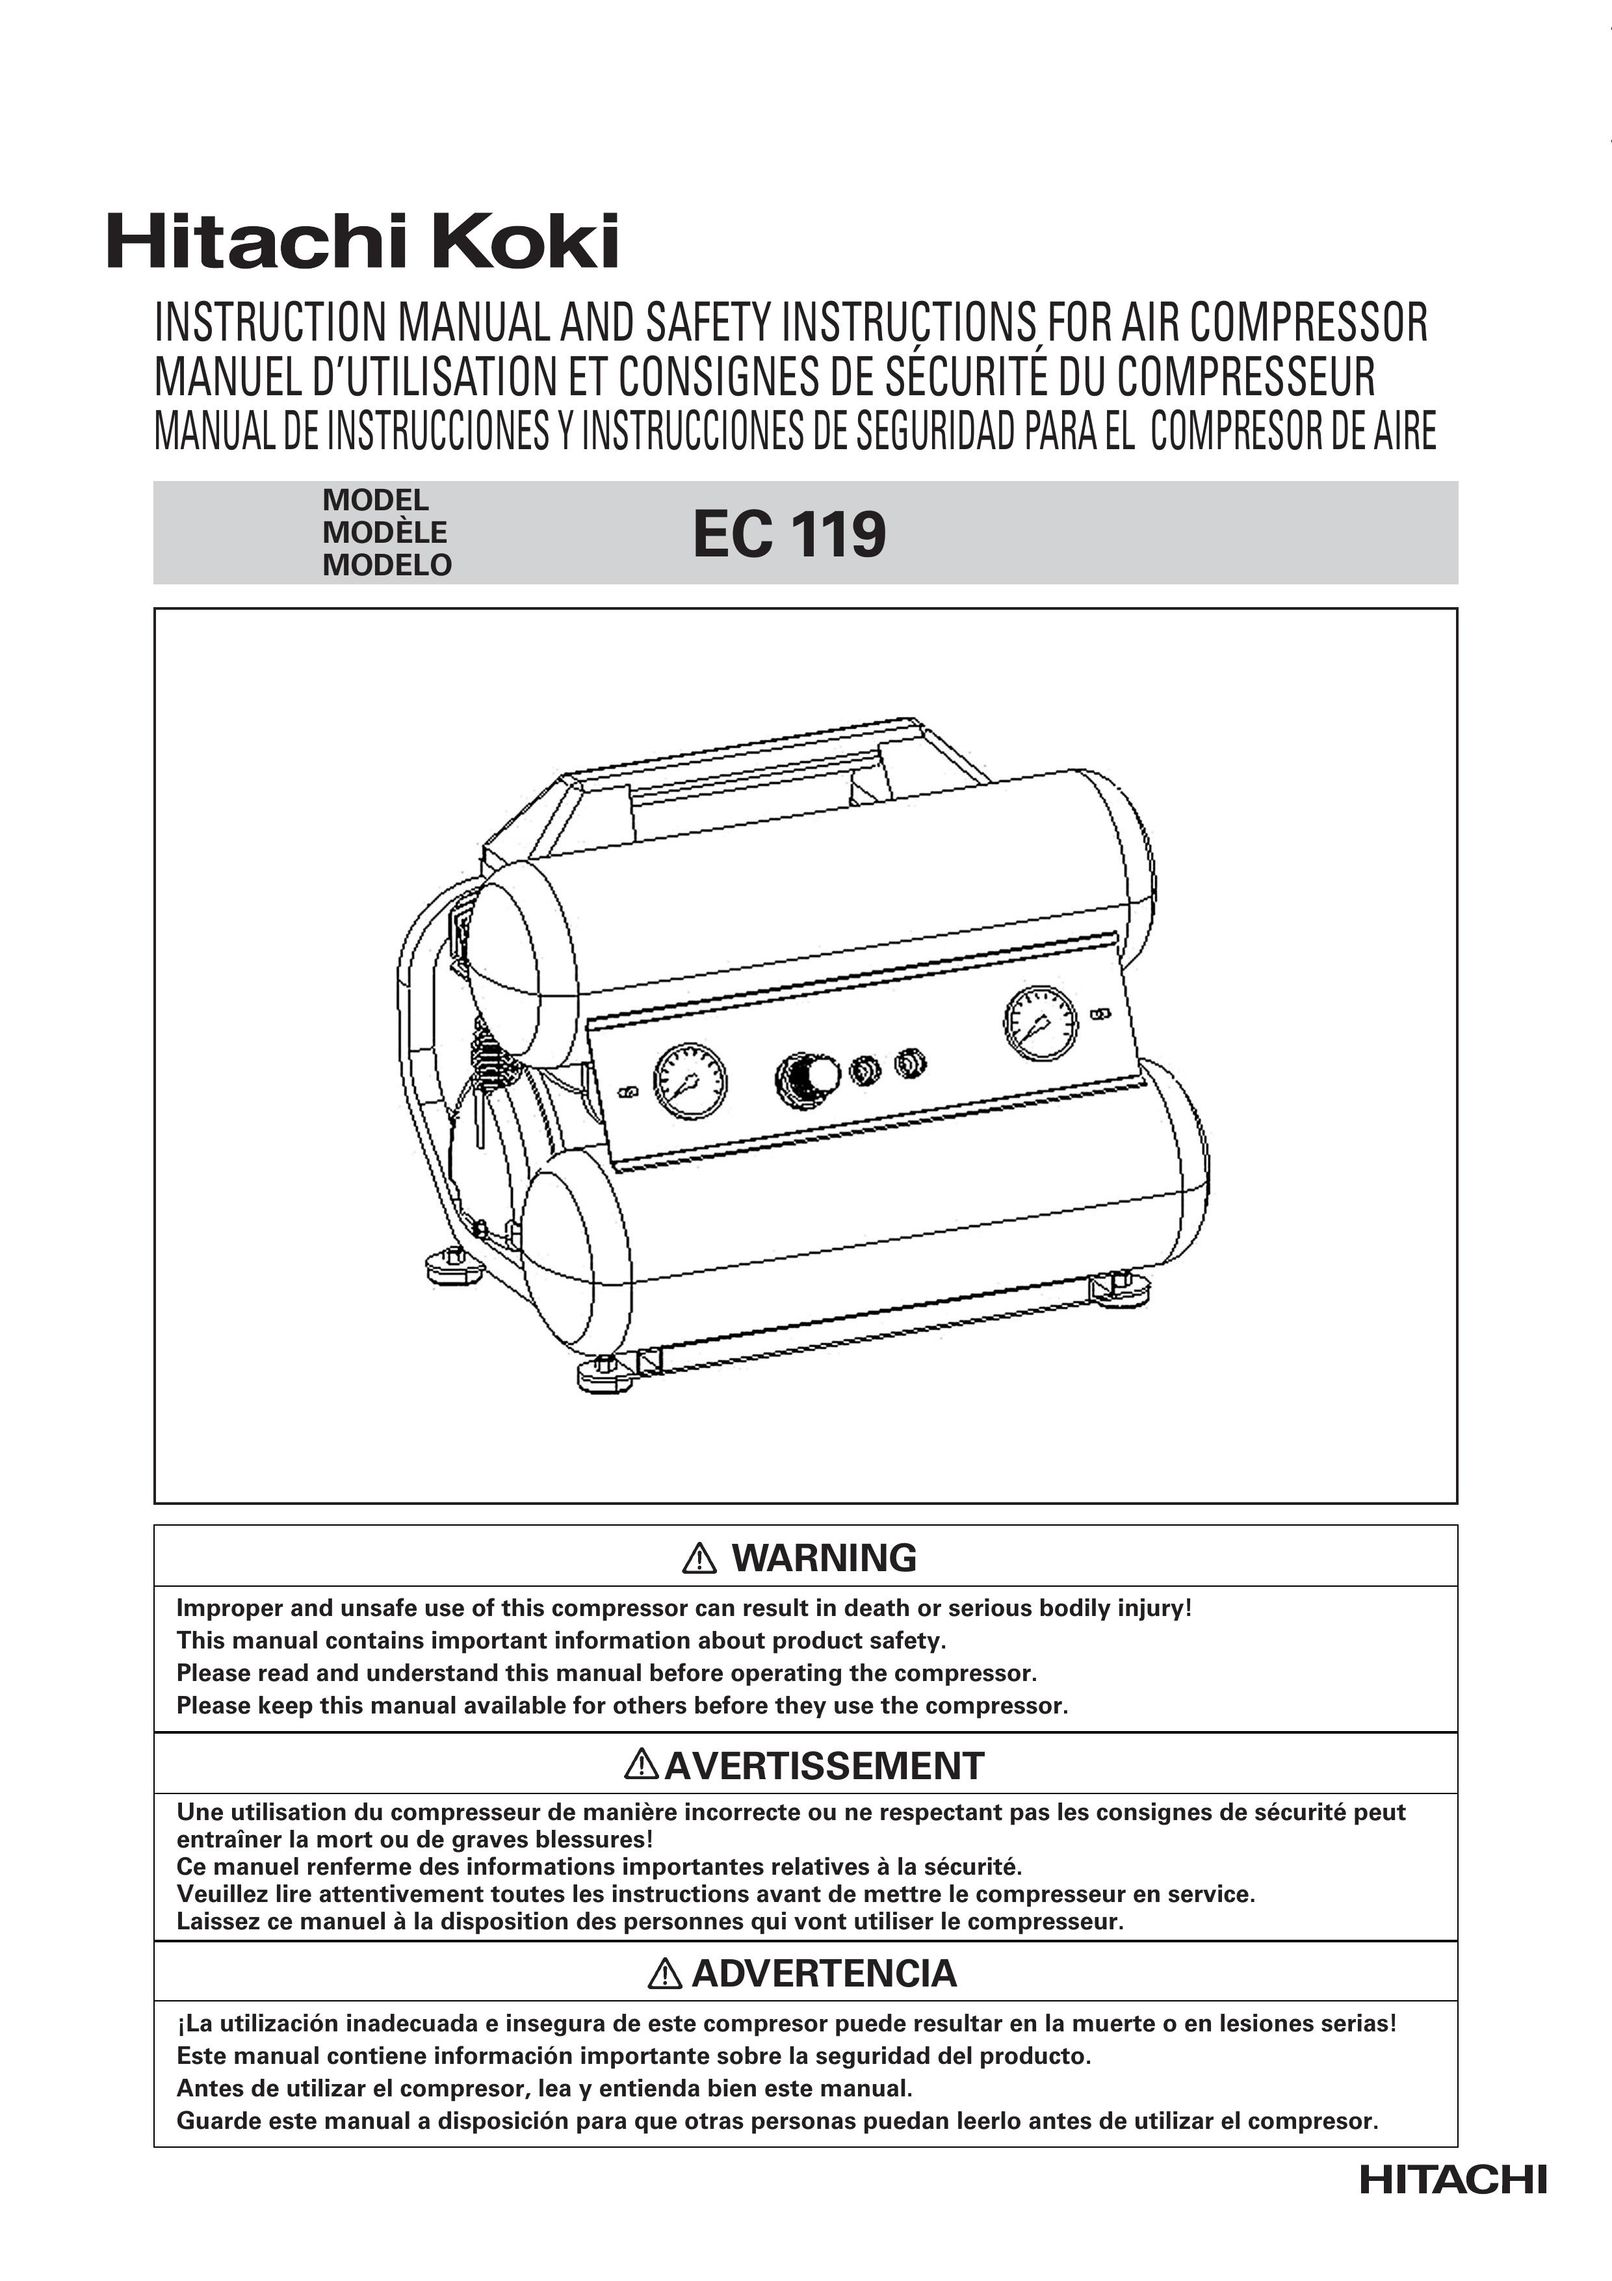 Hitachi EC119 OM Air Compressor User Manual